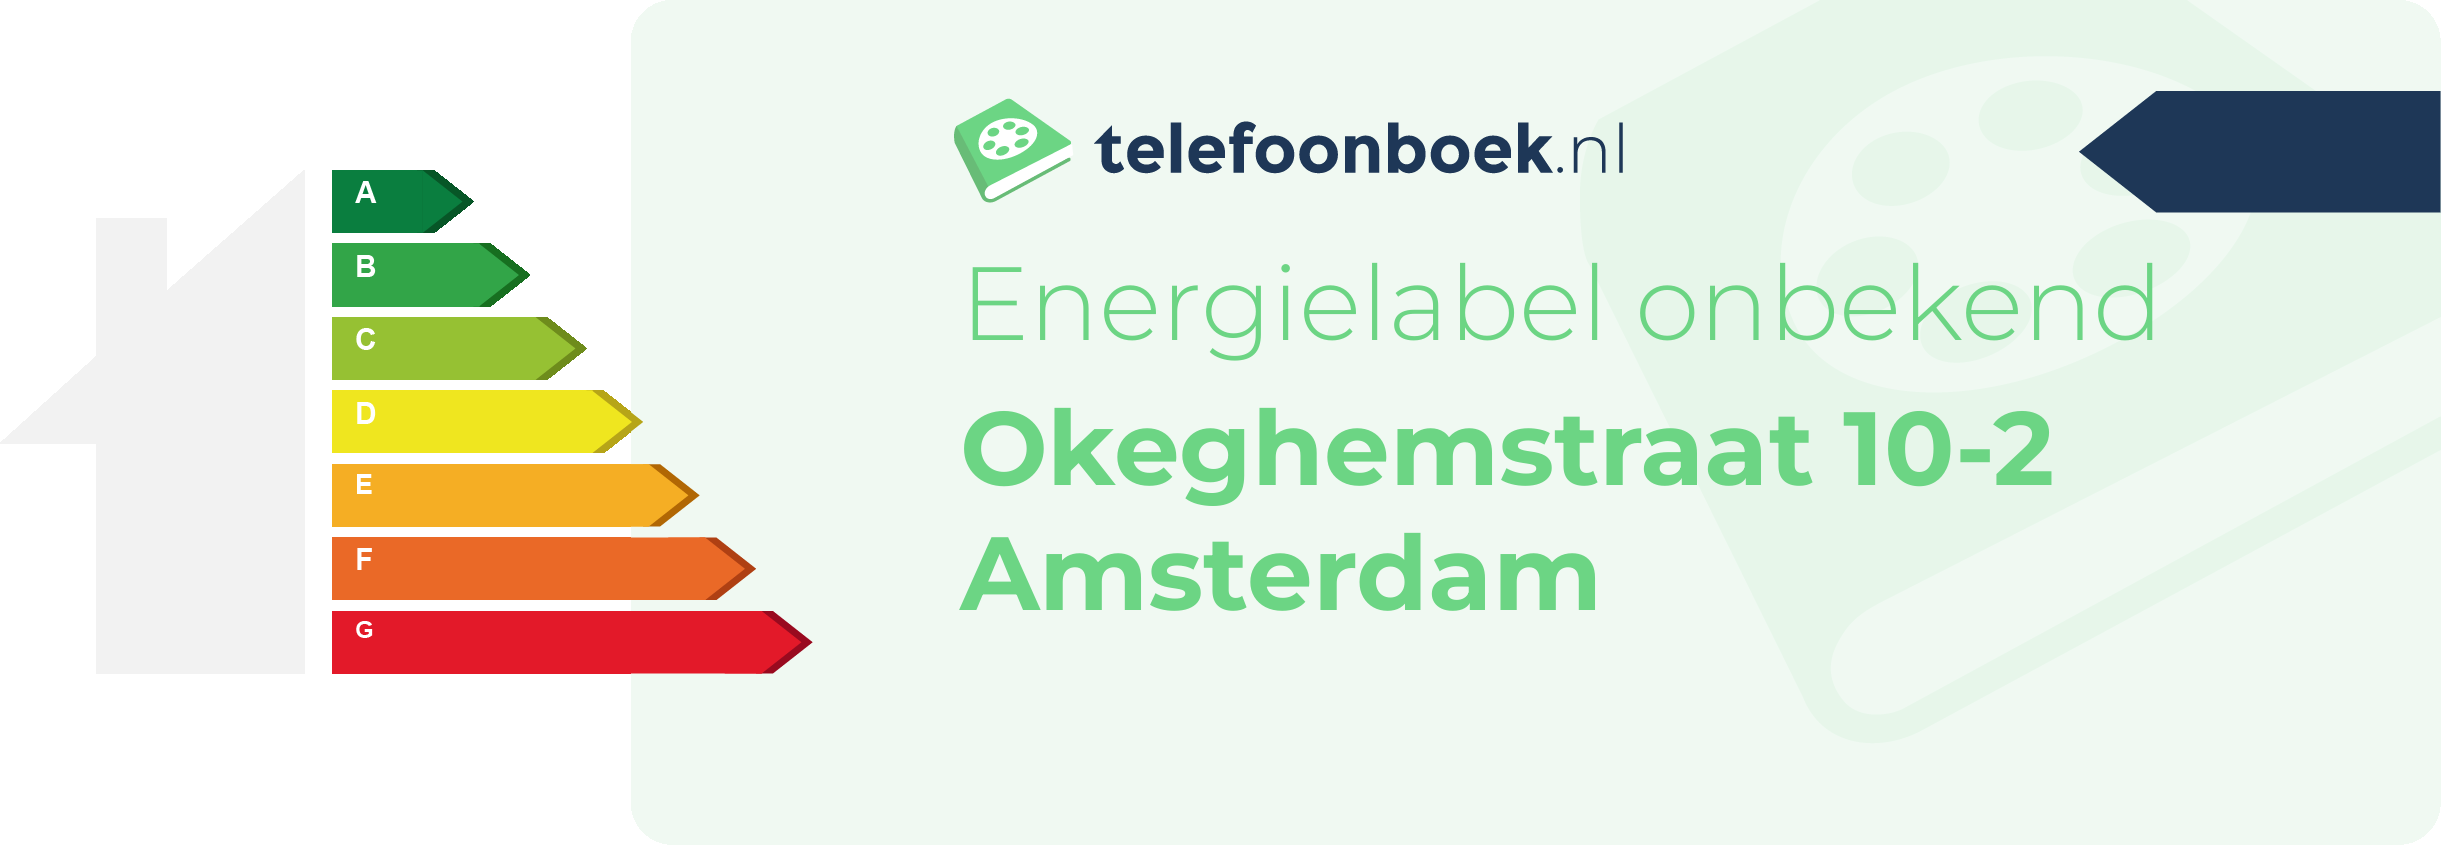 Energielabel Okeghemstraat 10-2 Amsterdam